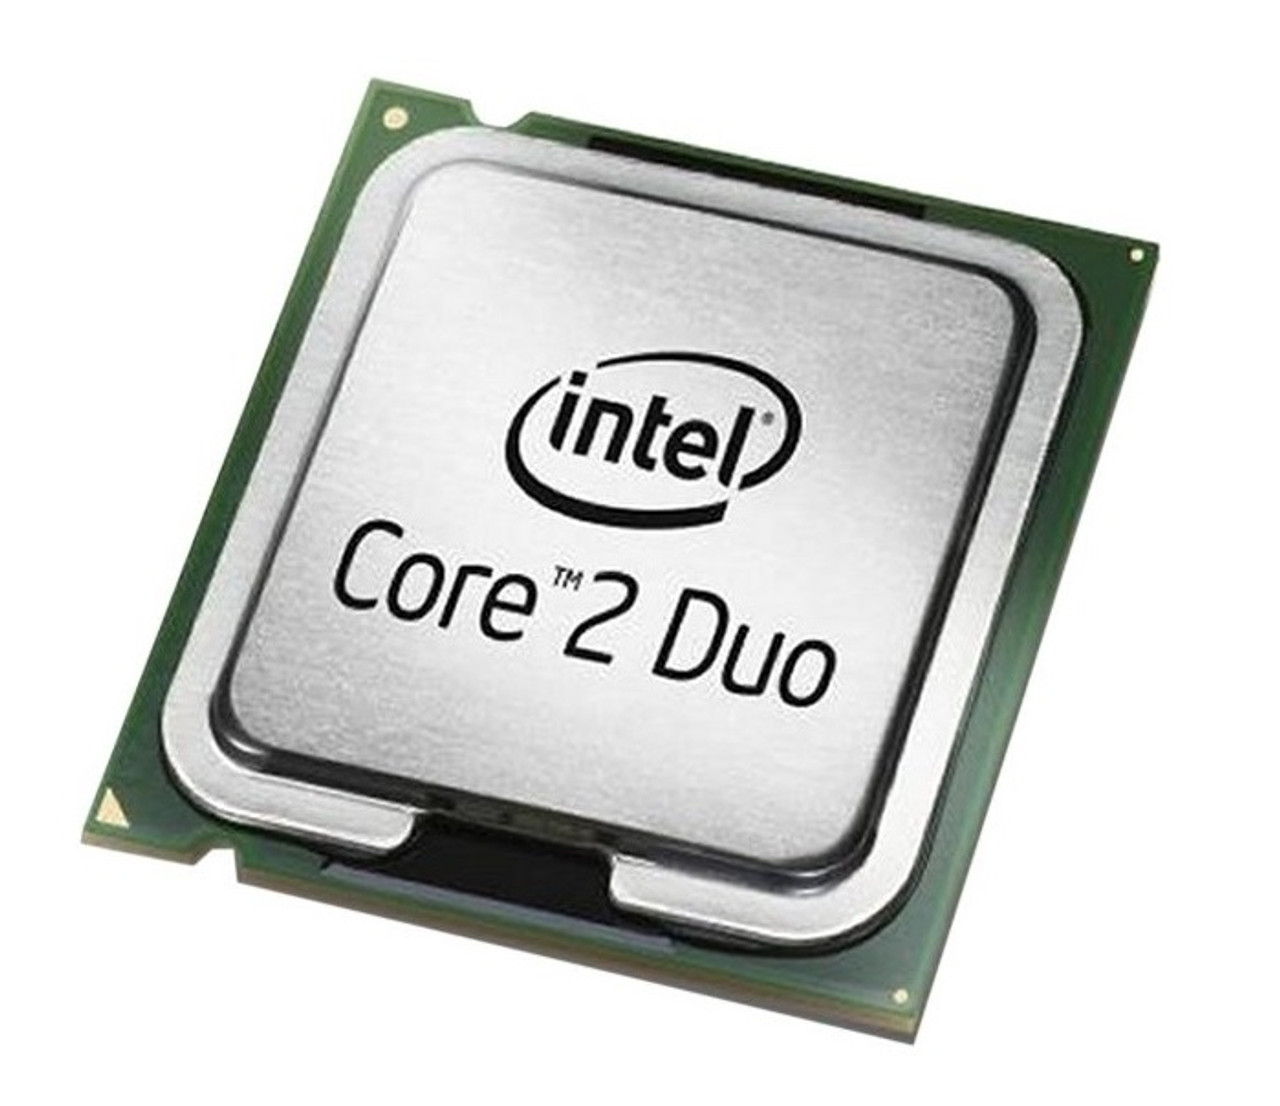 T5450 - Intel Core 2 Duo T5450 1.66GHz 667MHz FSB 2MB L2 Cache Mobile Processor